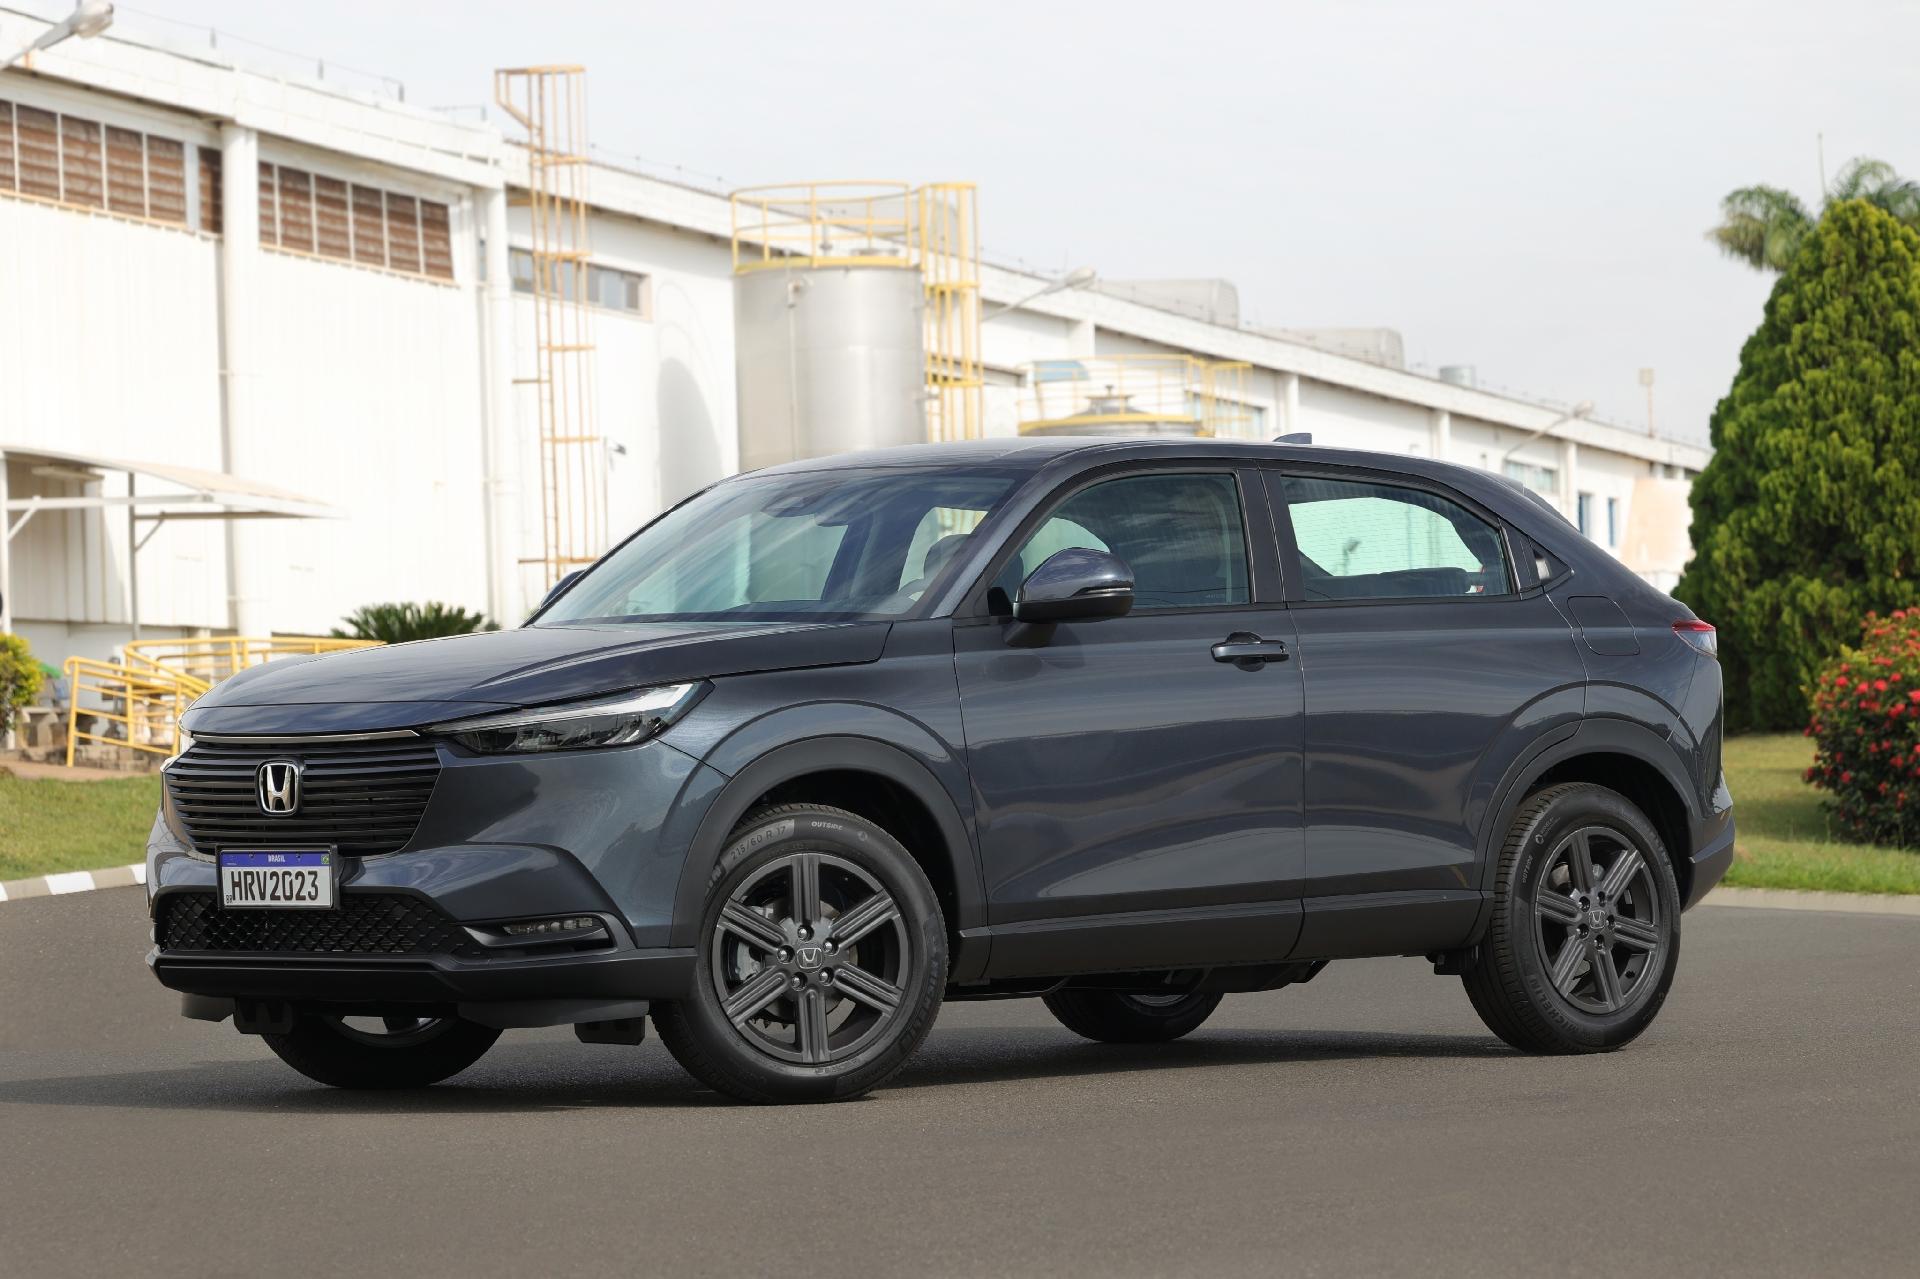 Novo Honda HRV 2023 já testamos a versão que deve ser a mais vendida